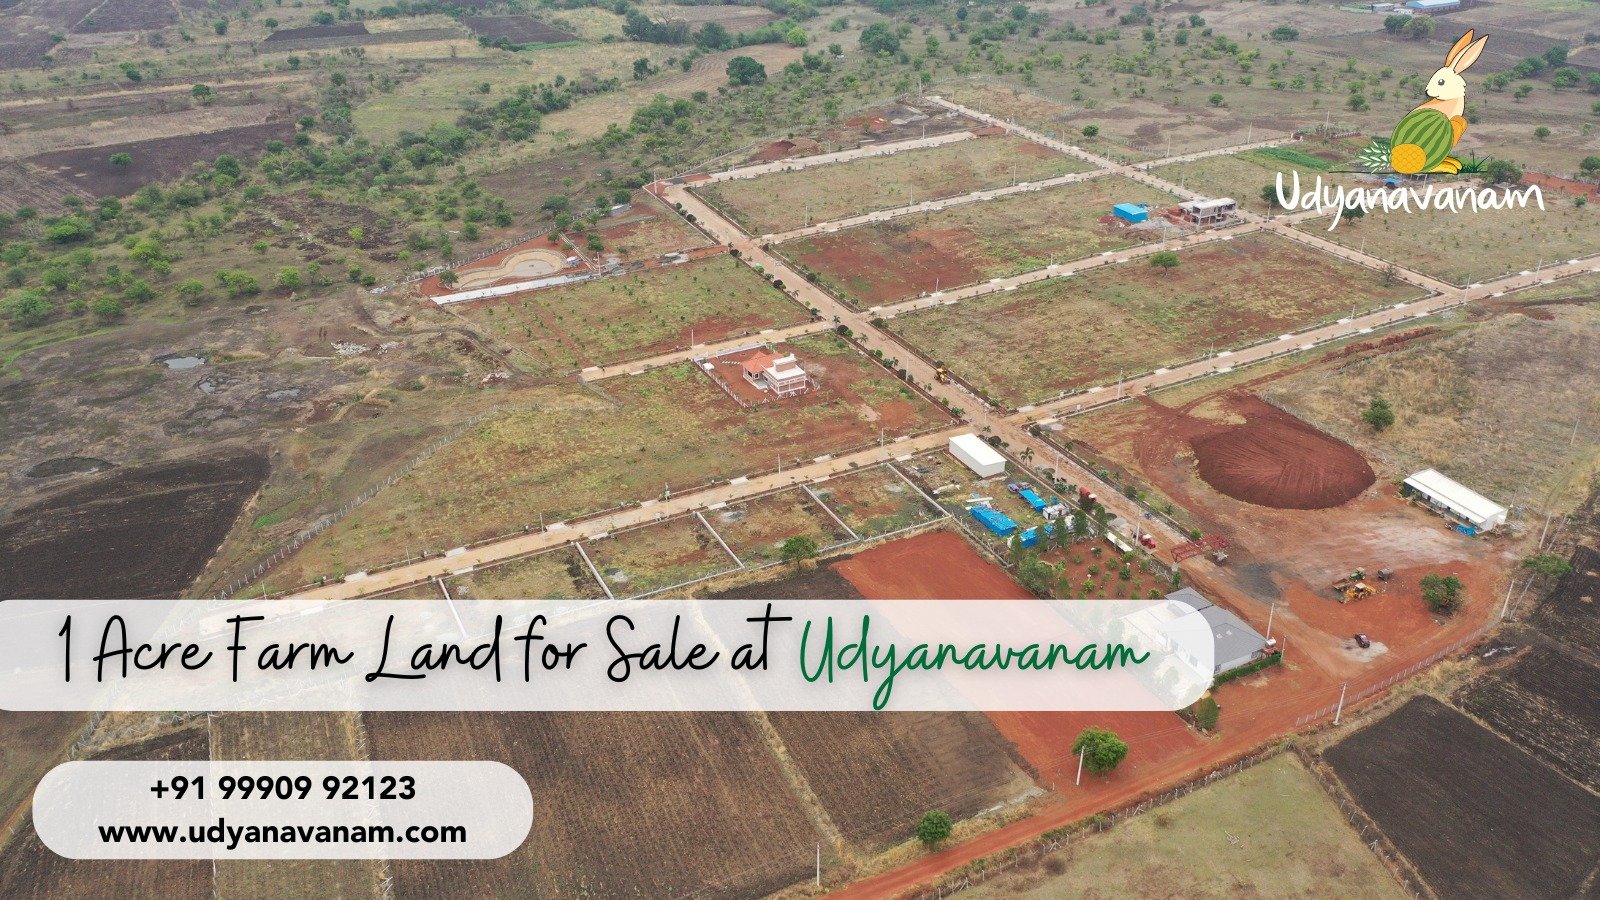 1 Acre Farm Land for Sale at Udyanavanam